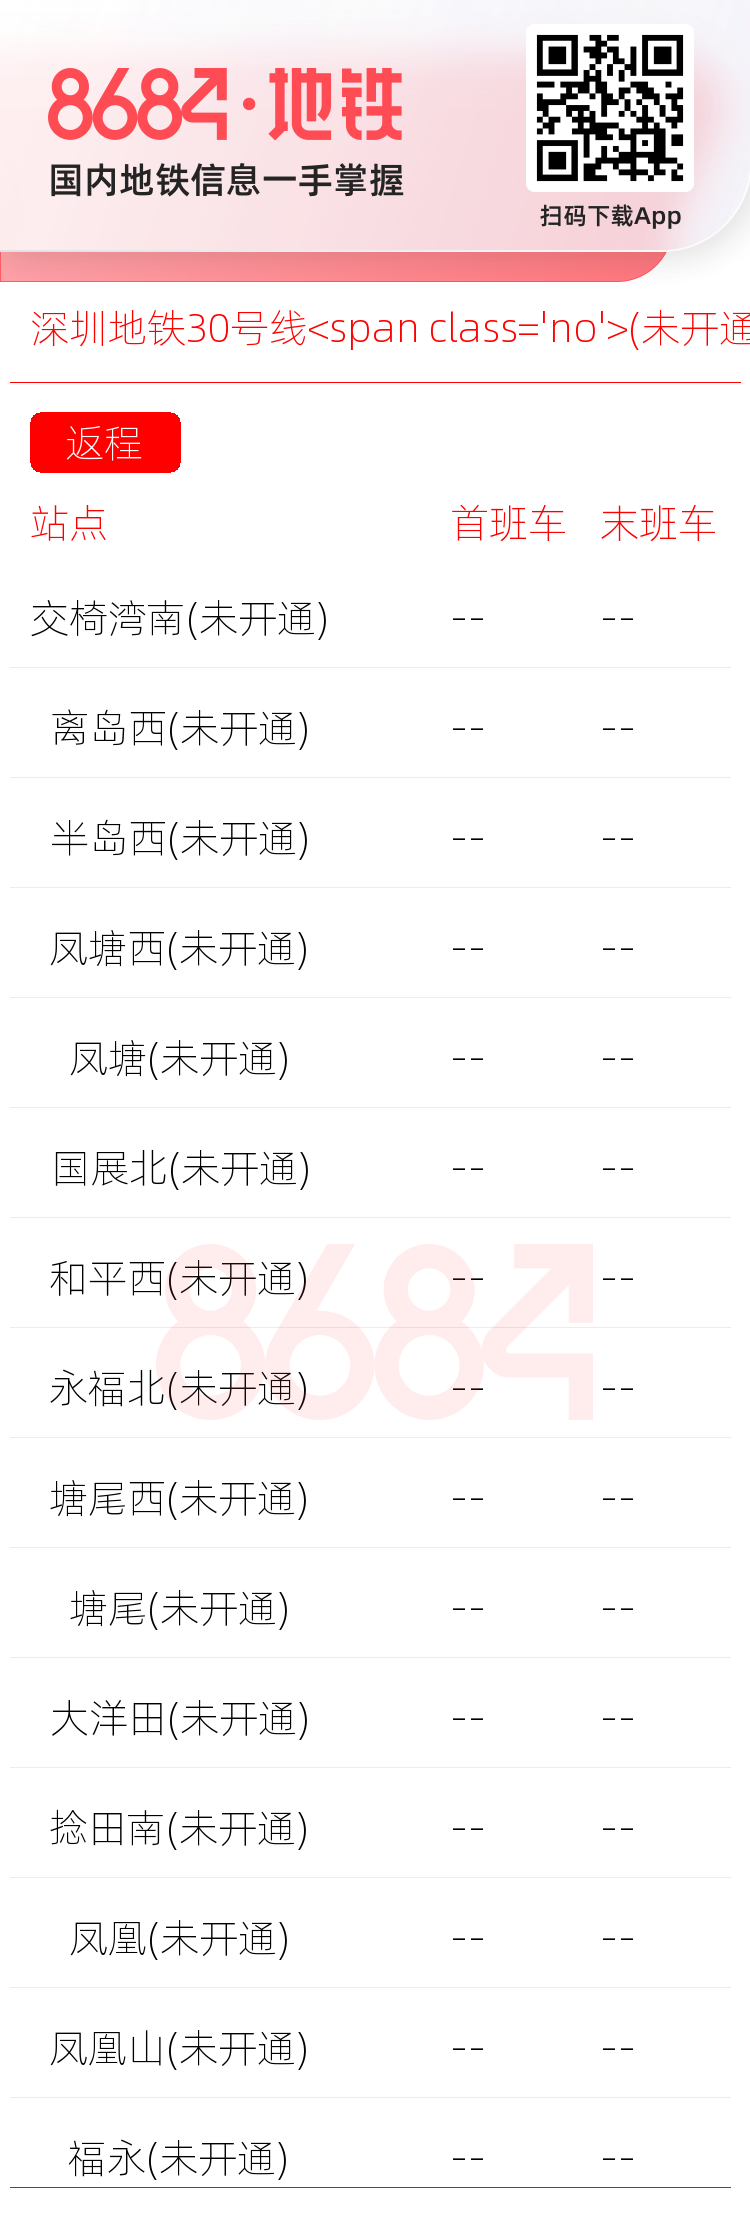 深圳地铁30号线<span class='no'>(未开通)</span>运营时间表